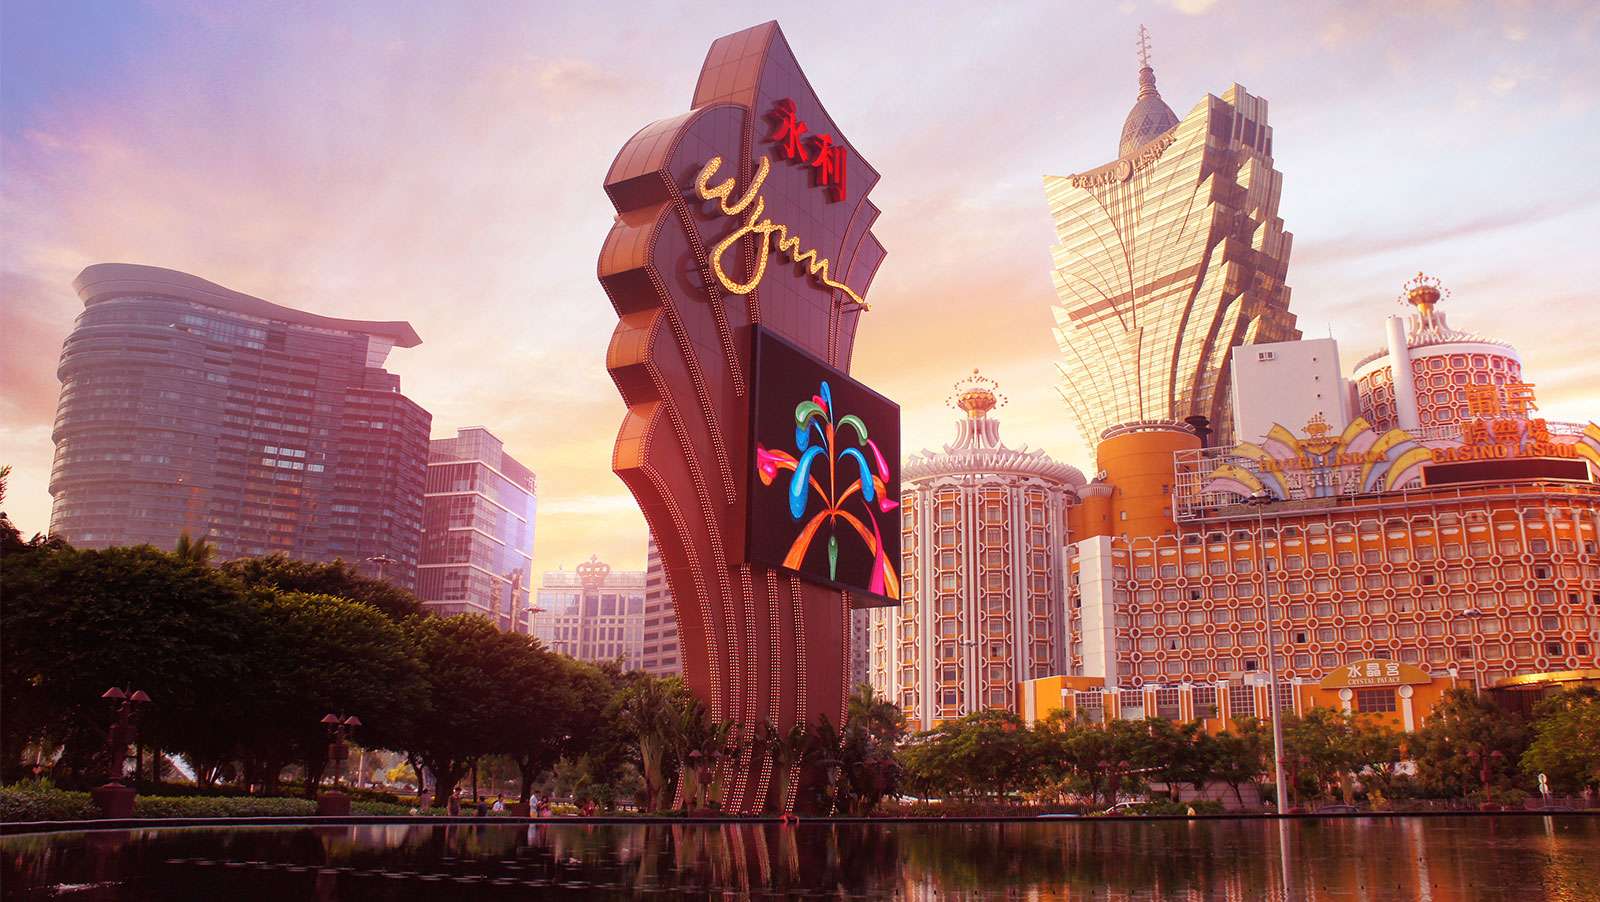 Wynn Resorts shares dip following poor performance at Wynn Macau